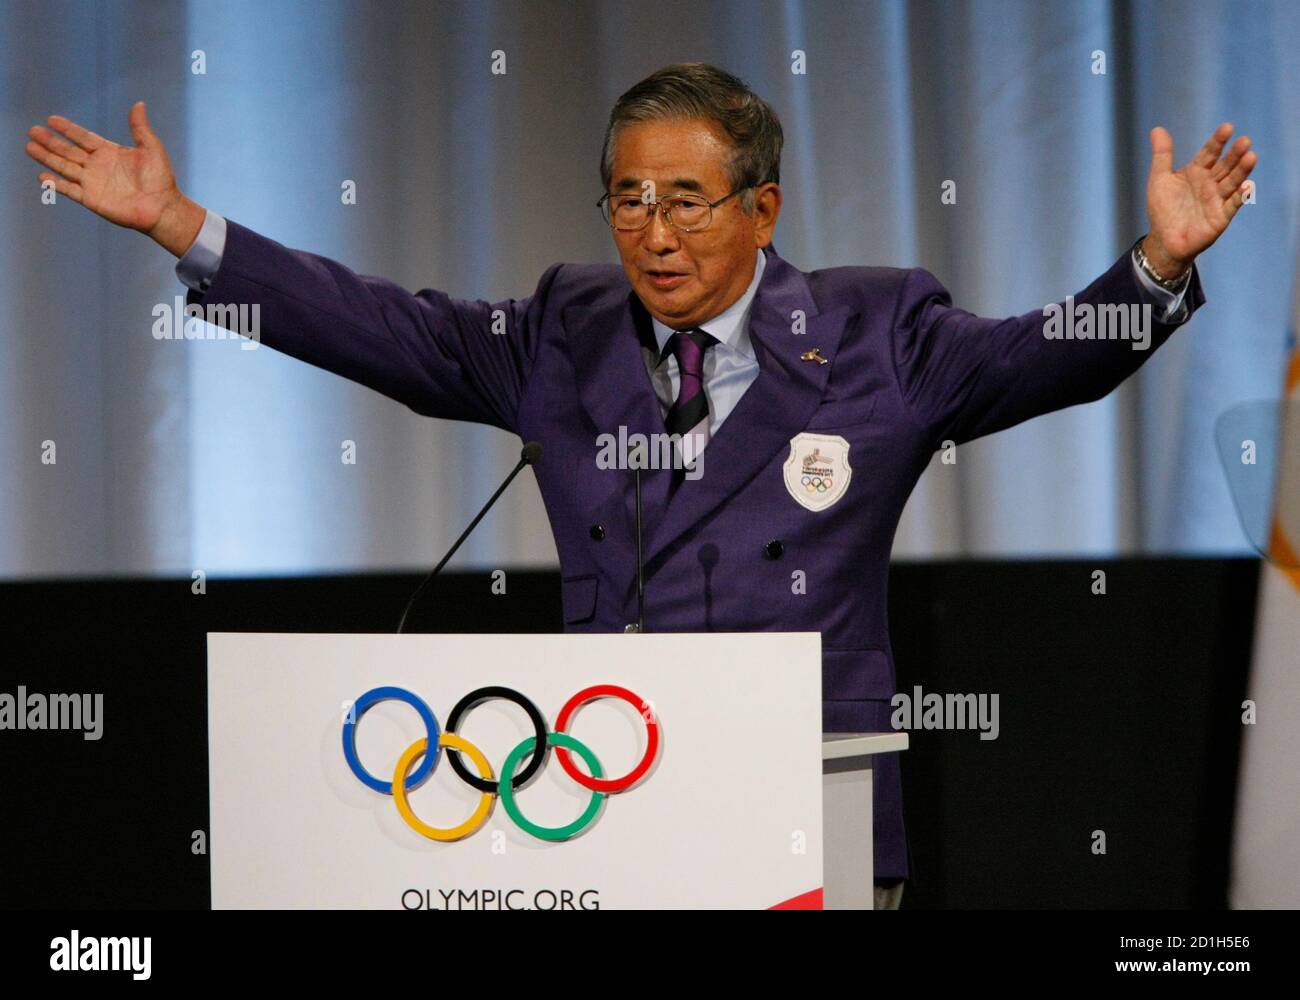 Shintaro Ishihara, el Gobernador de Tokio, presenta la candidatura de Tokio para los Juegos Olímpicos de 2016 a los miembros del Comité Olímpico Internacional (COI) durante la 121a sesión del COI en Copenhague el 2 de octubre de 2009. El COI decidirá hoy la sede de los Juegos Olímpicos de Verano de 2016. REUTERS/Denis Balibouse (JUEGOS OLÍMPICOS DEPORTIVOS DE DINAMARCA) Foto de stock